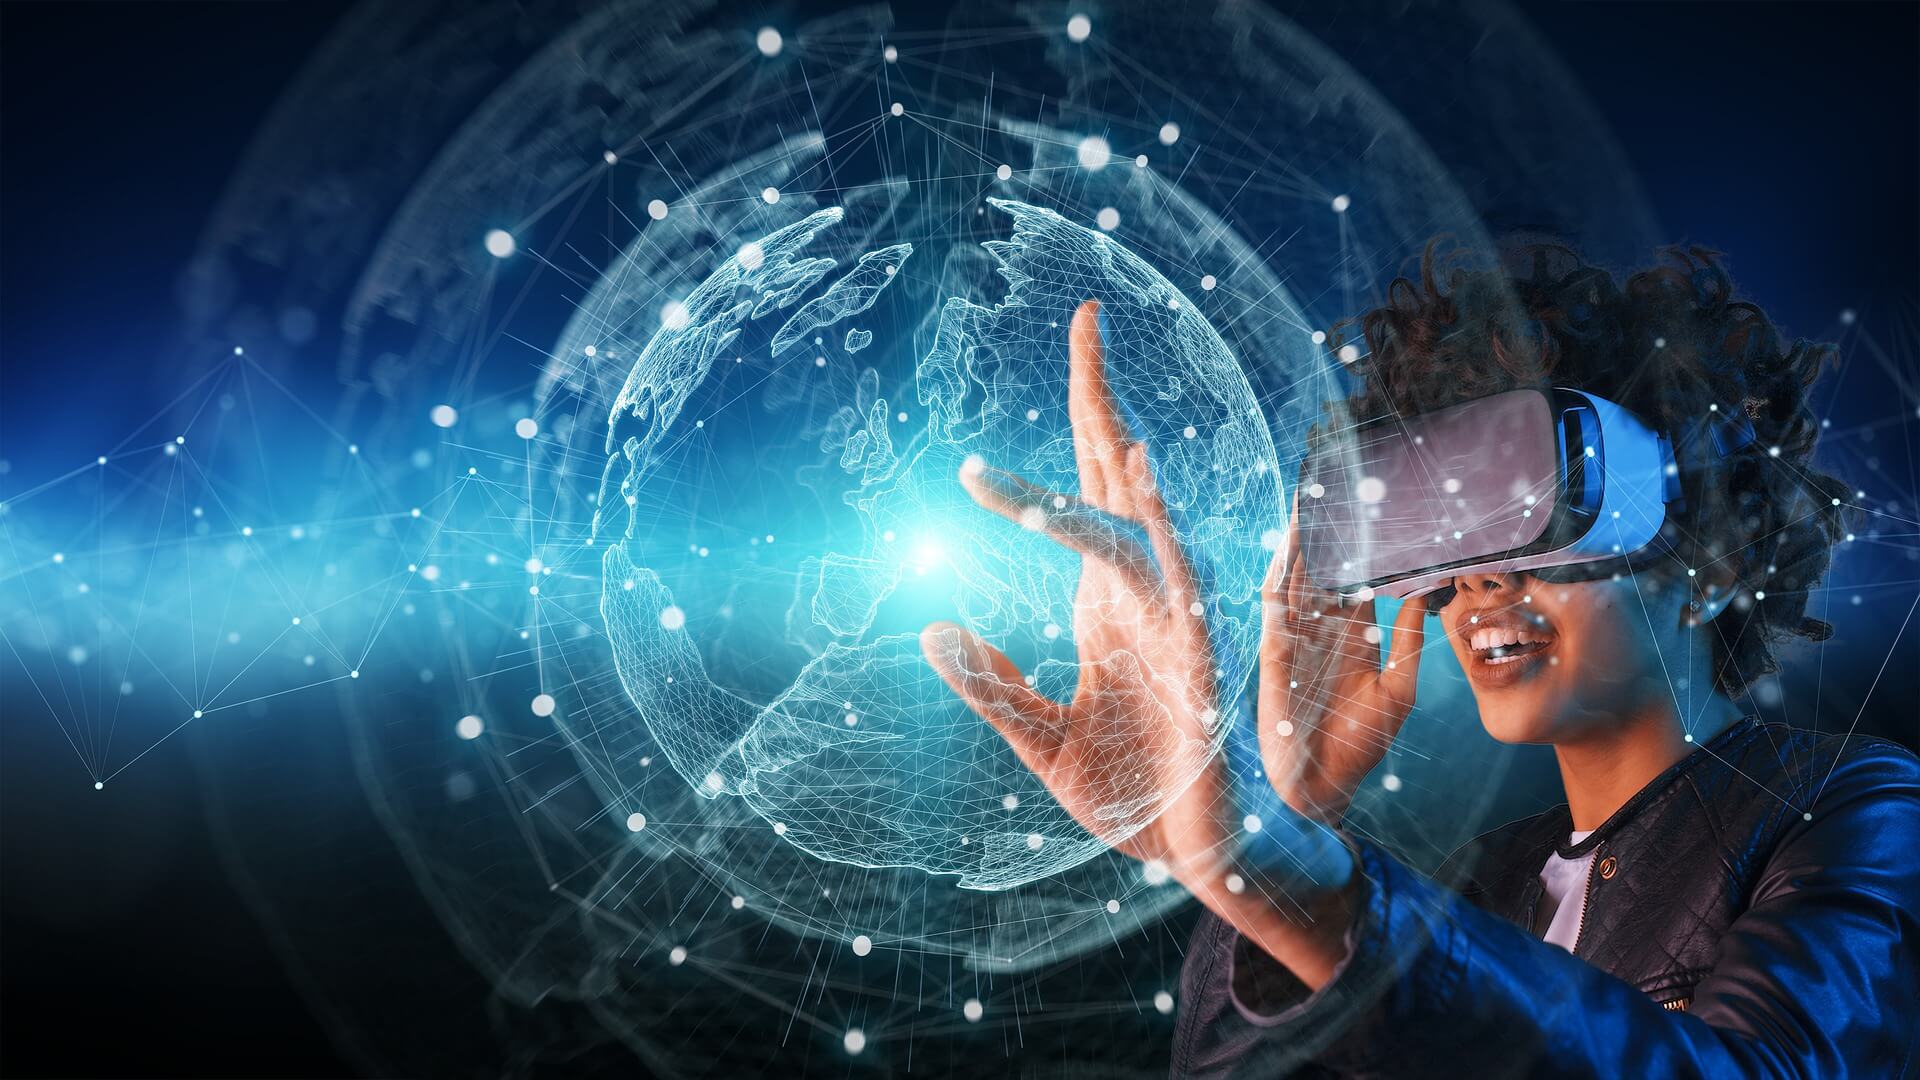 图片展示一位戴着虚拟现实头盔的人，正用手触摸前方呈现的三维地球网络图，表情专注，科技感十足。